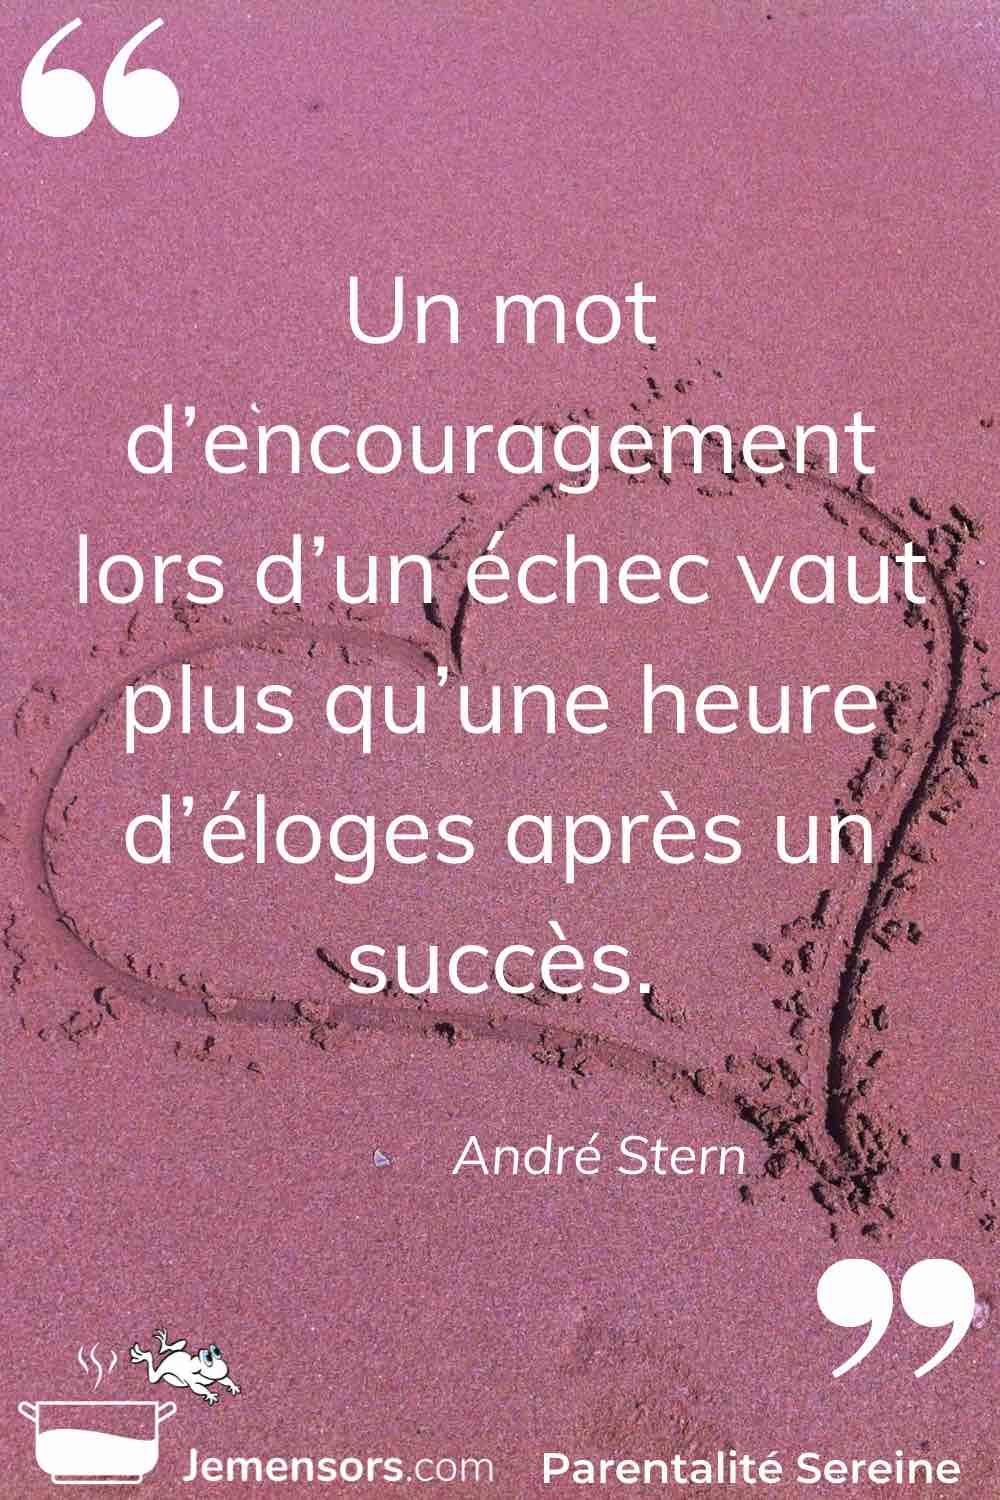 “Un mot d’encouragement lors d’un échec vaut plus qu’une heure d’éloges après un succès.” André Stern